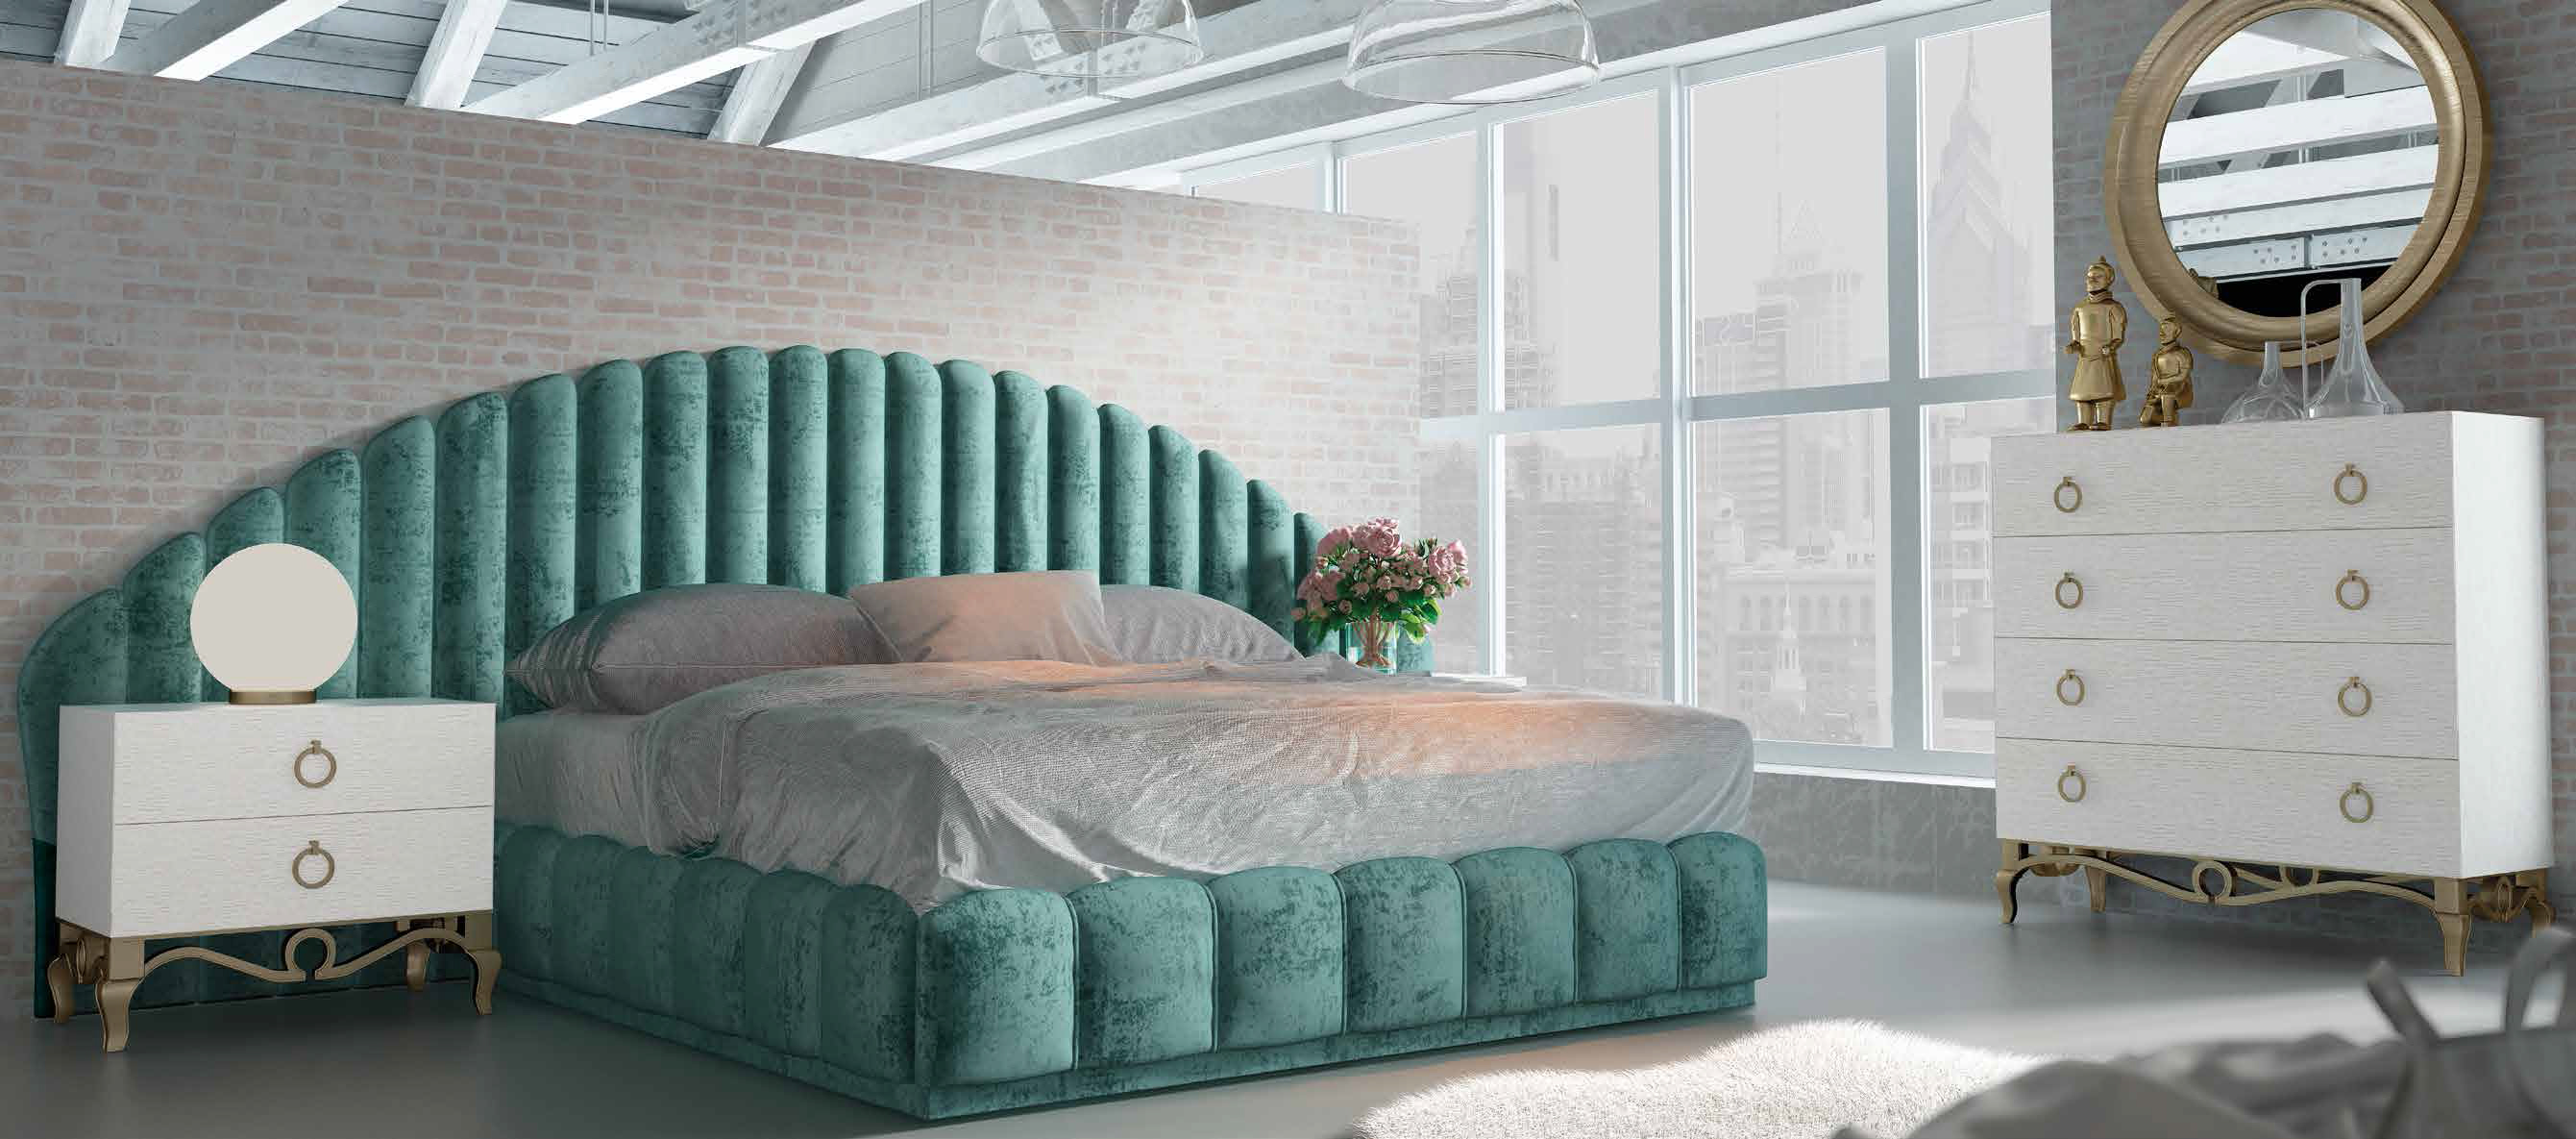 Brands Franco Furniture Avanty Bedrooms, Spain DOR 65